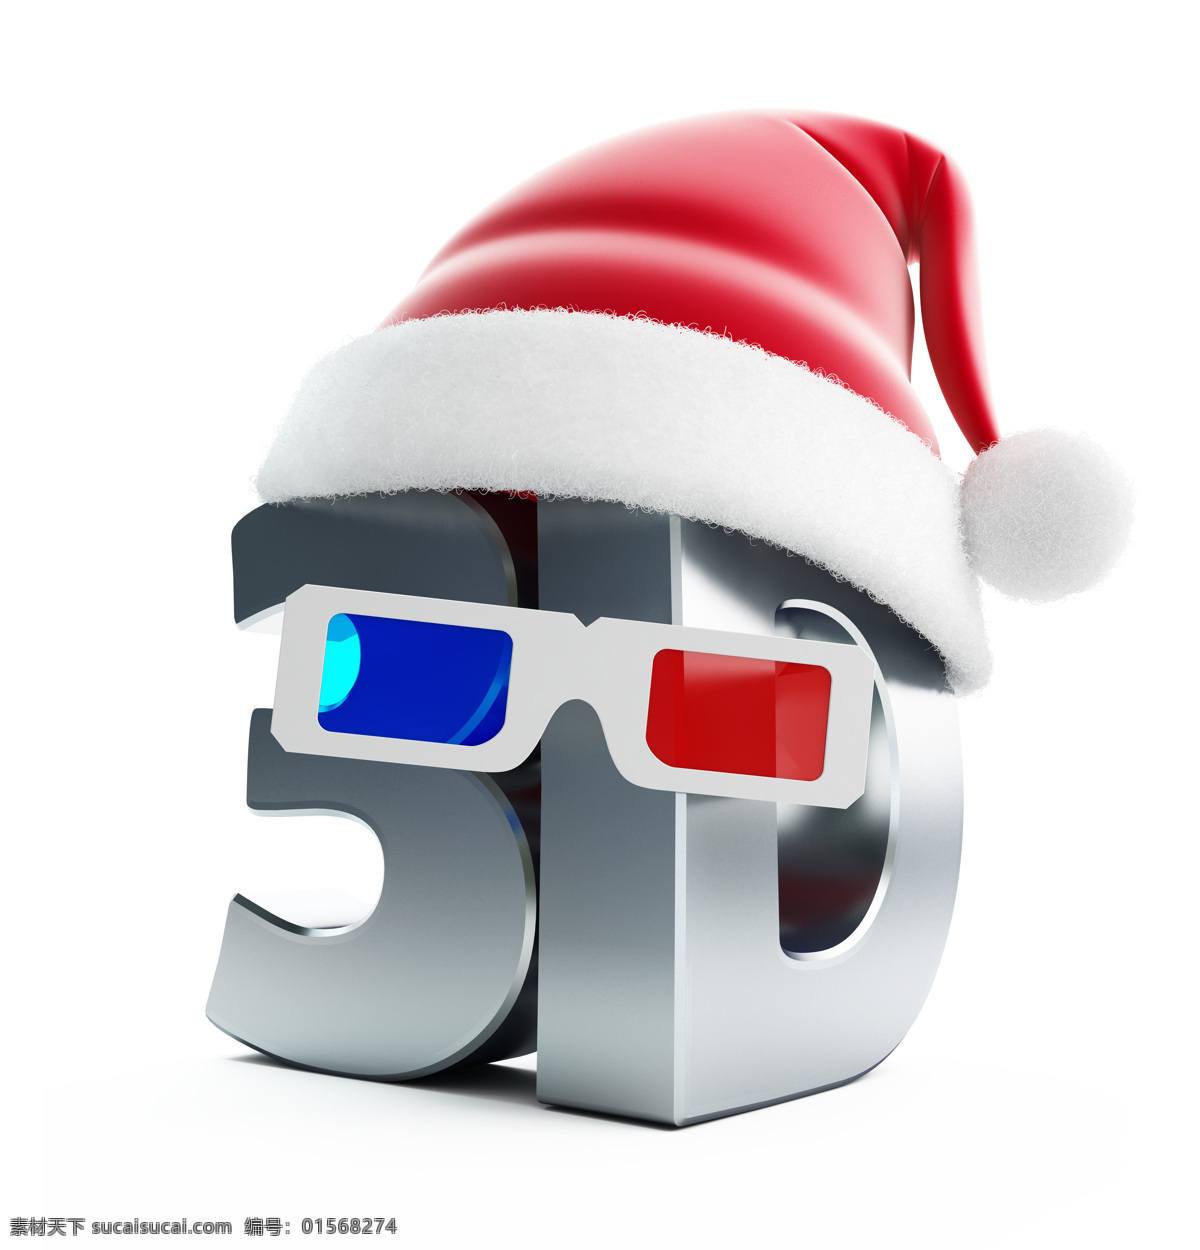 帽子 下 3d 字母 眼镜 3d电影 圣诞帽 电影 影音娱乐 其他类别 生活百科 白色